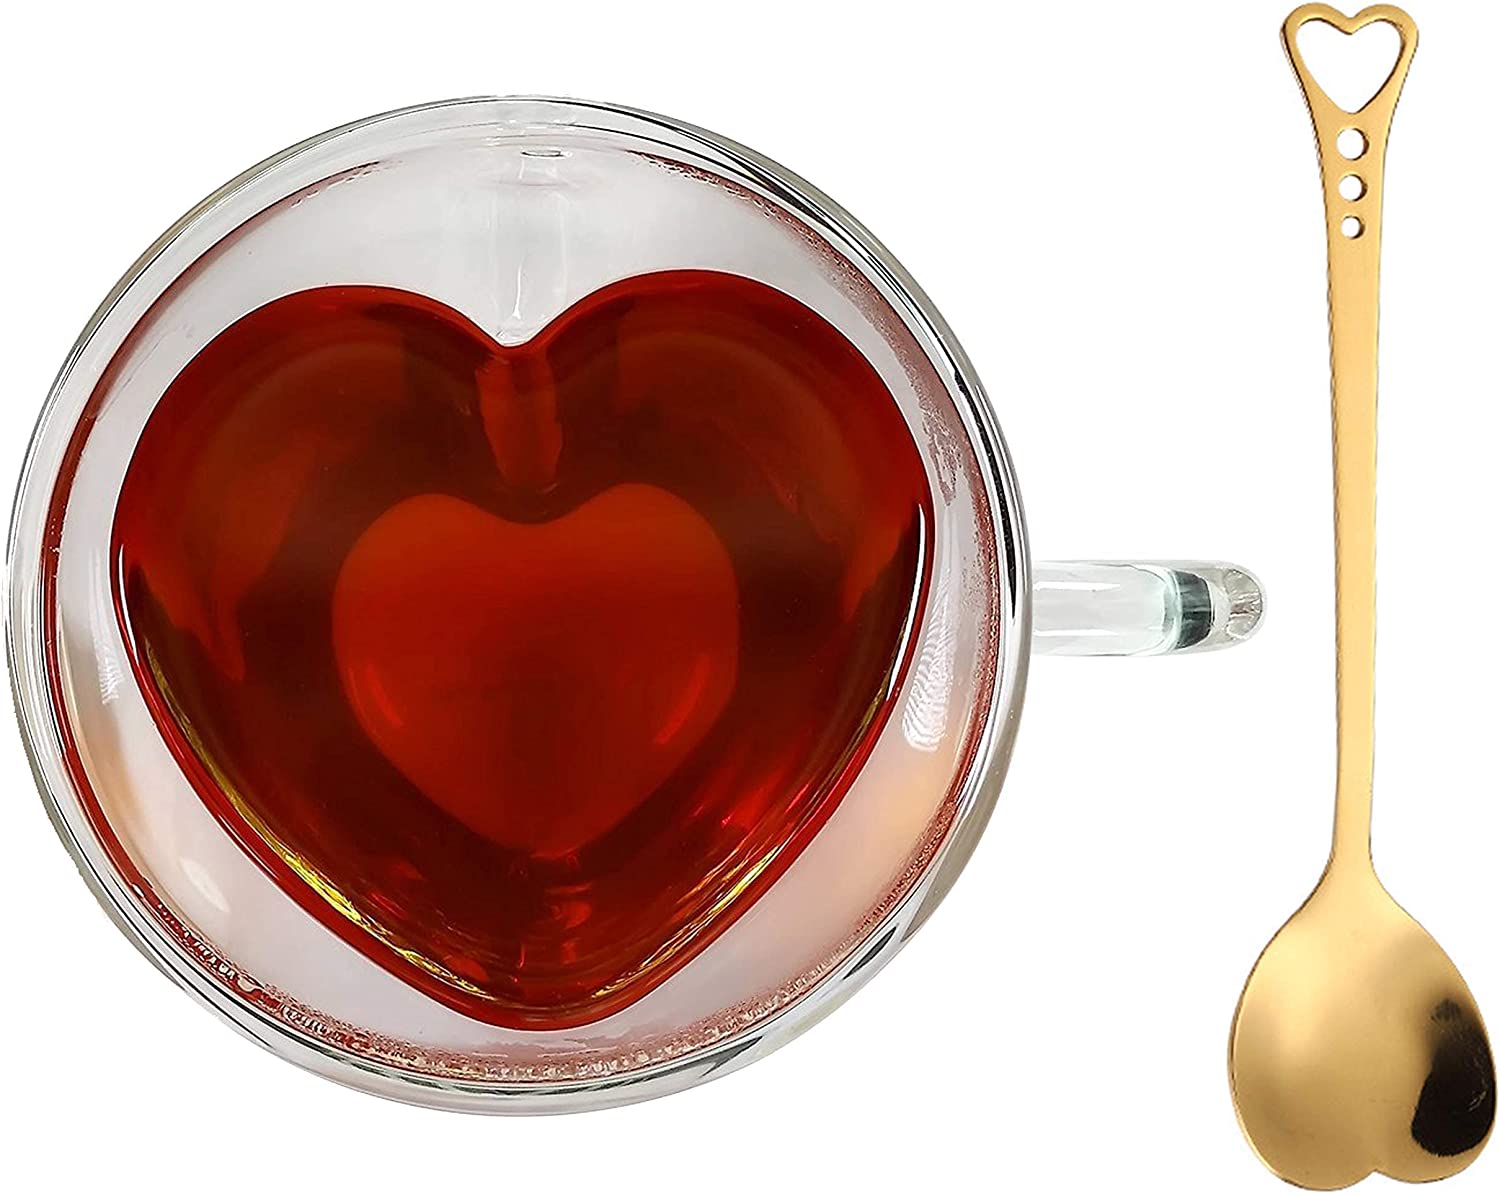 clear glass heart shaped mug